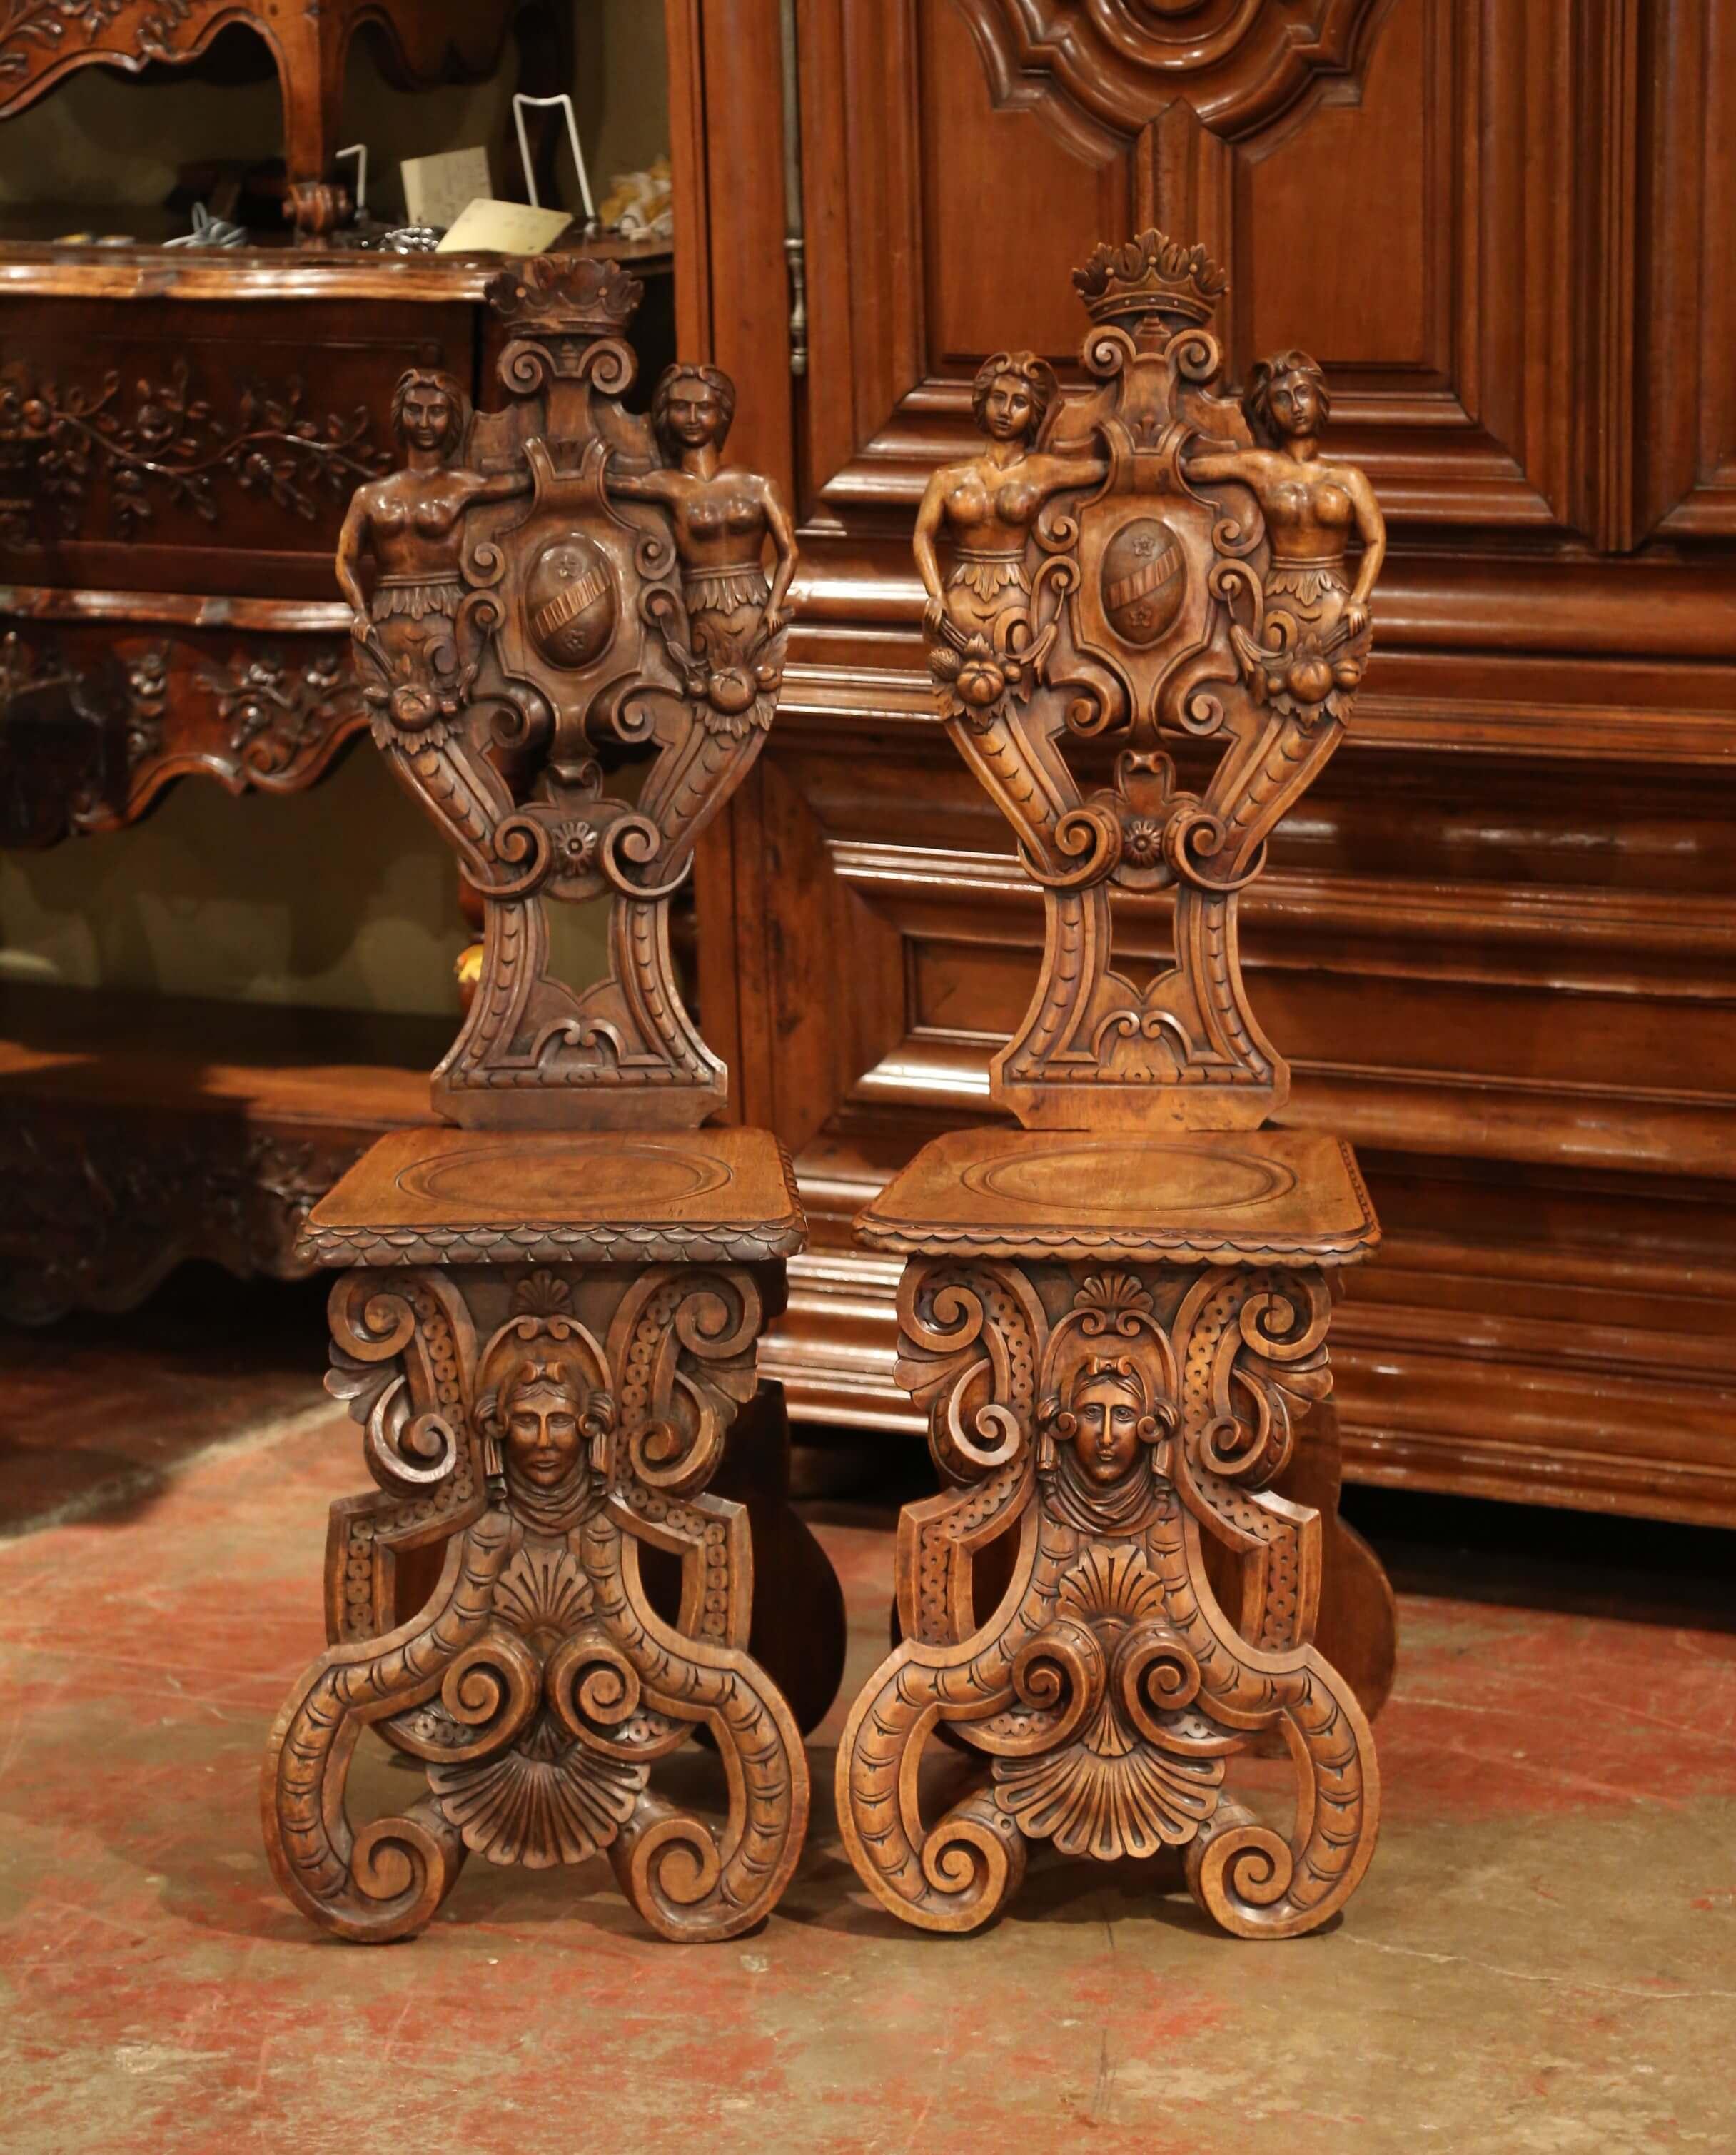 Décorez un couloir avec cette paire de chaises Sgabello anciennes bien sculptées. Fabriquée en noyer en Italie vers 1860, chaque chaise Renaissance repose sur des pieds incurvés, décorés au centre d'une figure féminine et agrémentés de motifs de